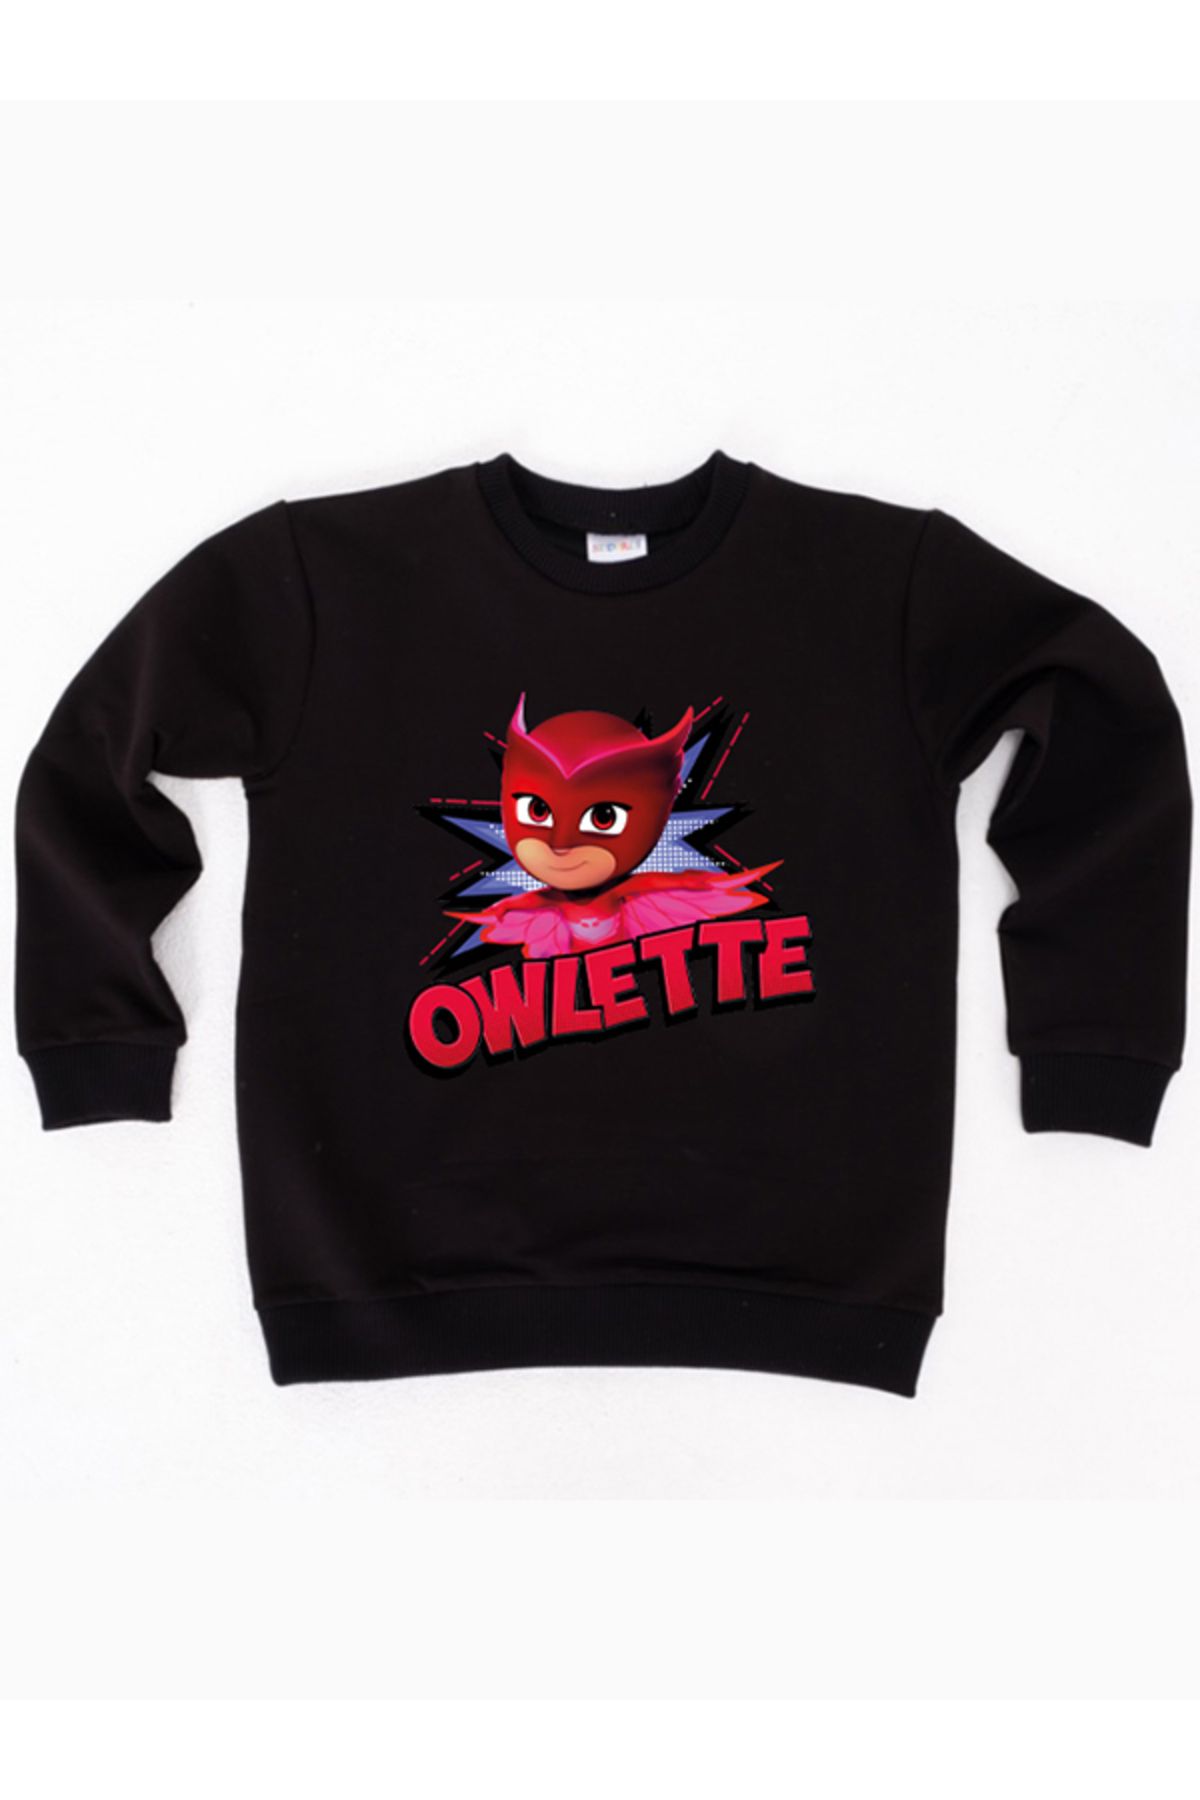 PJ Masks Pj maskeliler Owlette baskılı pamuklu kumaş çocuk sweatshirt